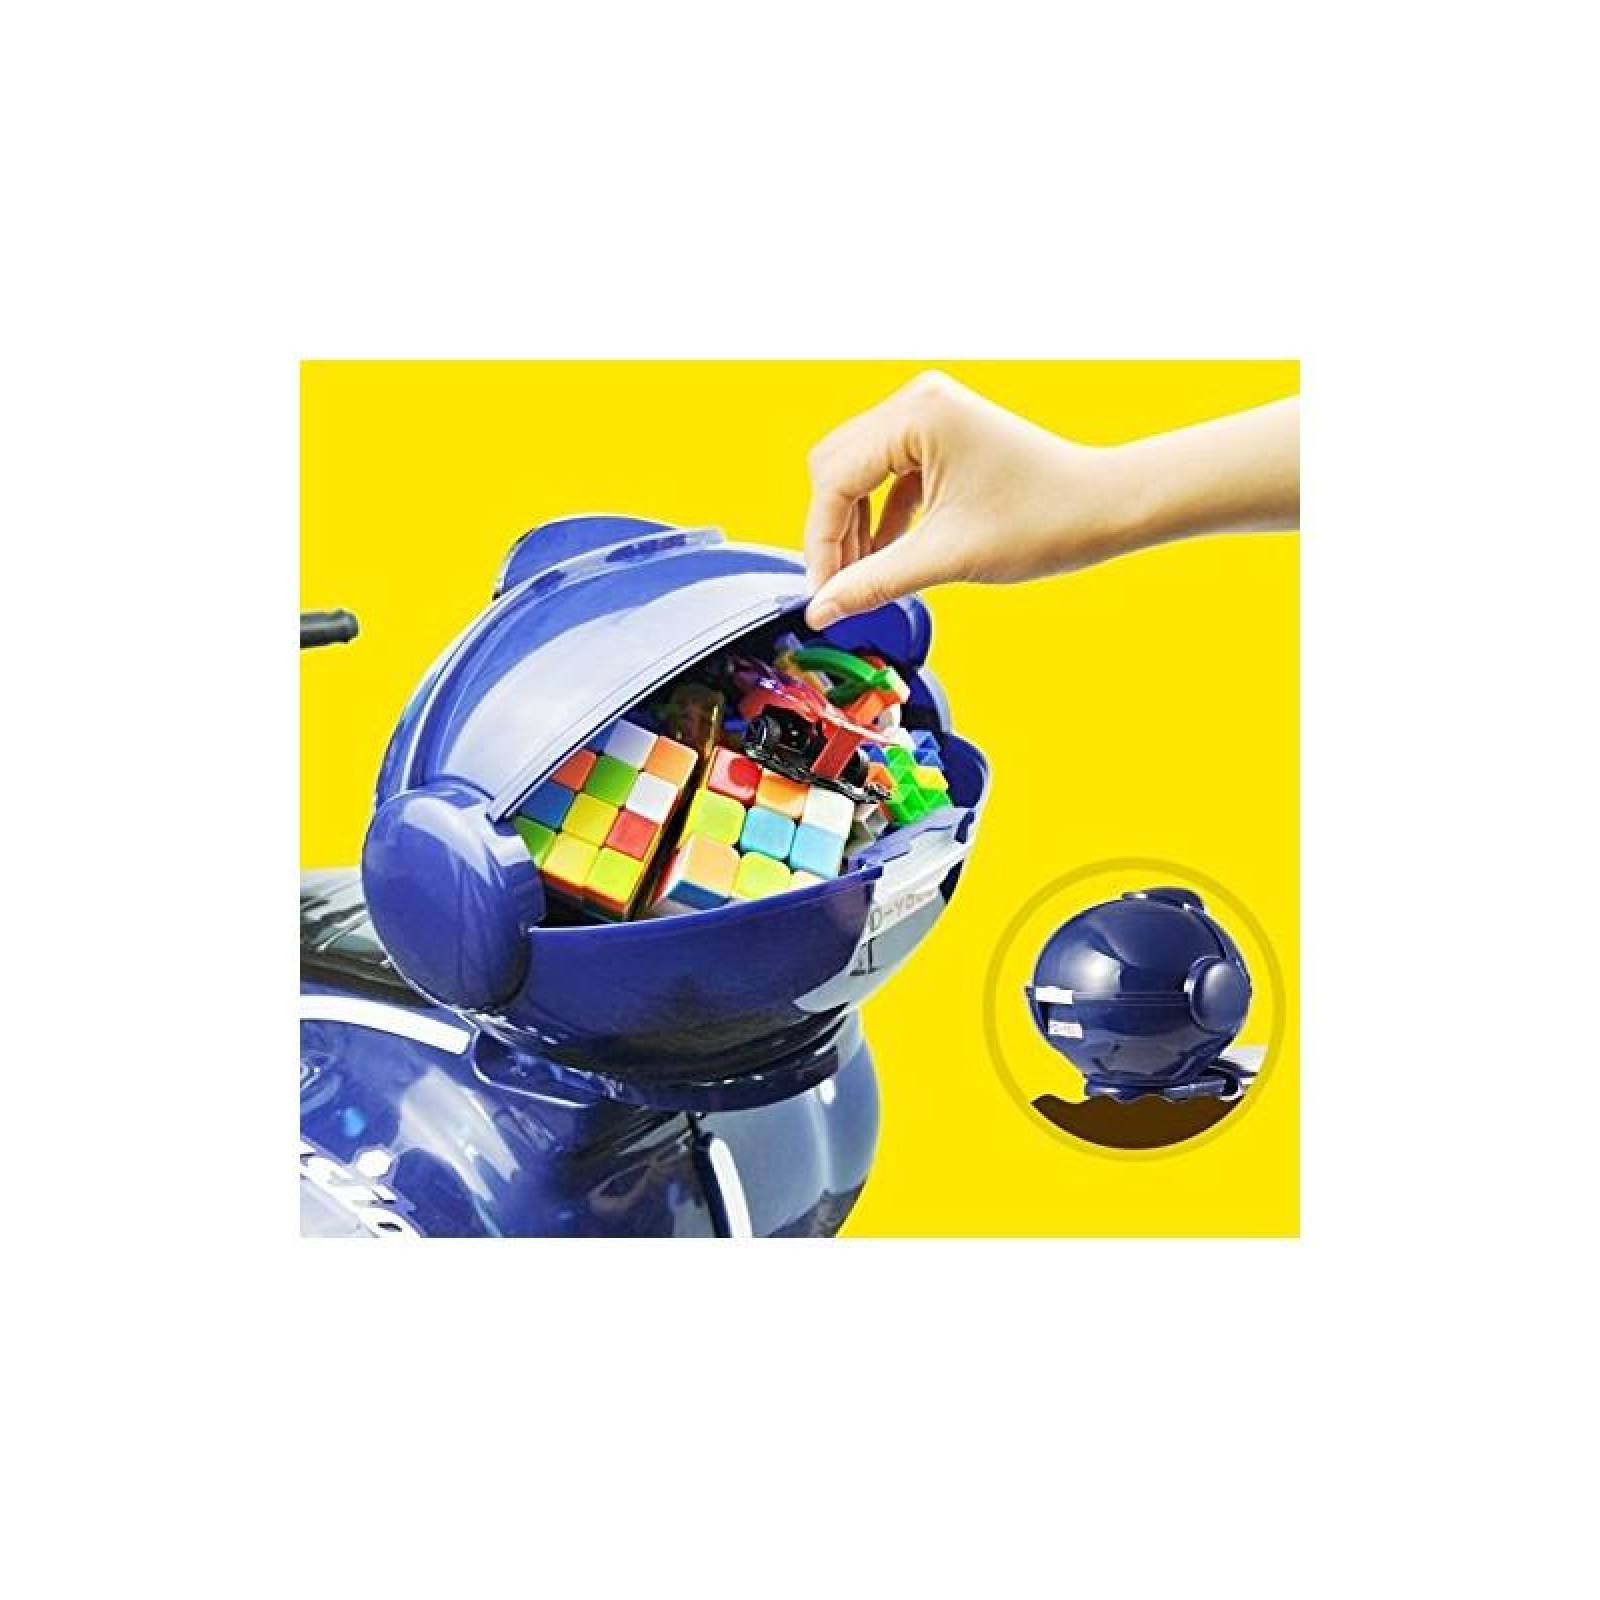 Motocicleta deportiva eléctrica con sonido y led para niños Azul